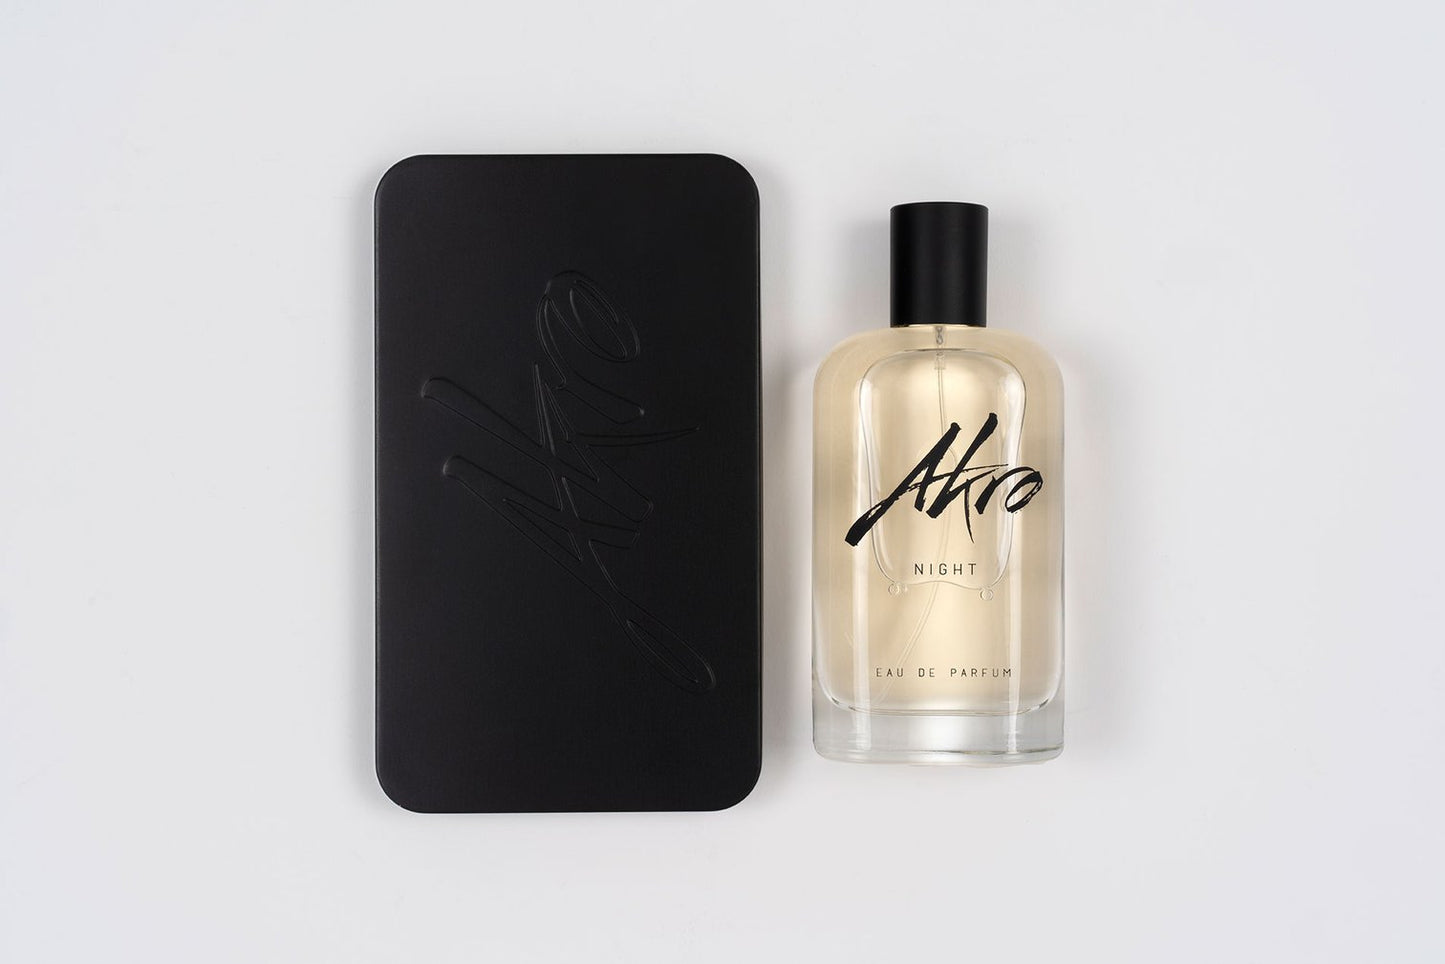 Akro - NIGHT Eau de Parfum 100ML